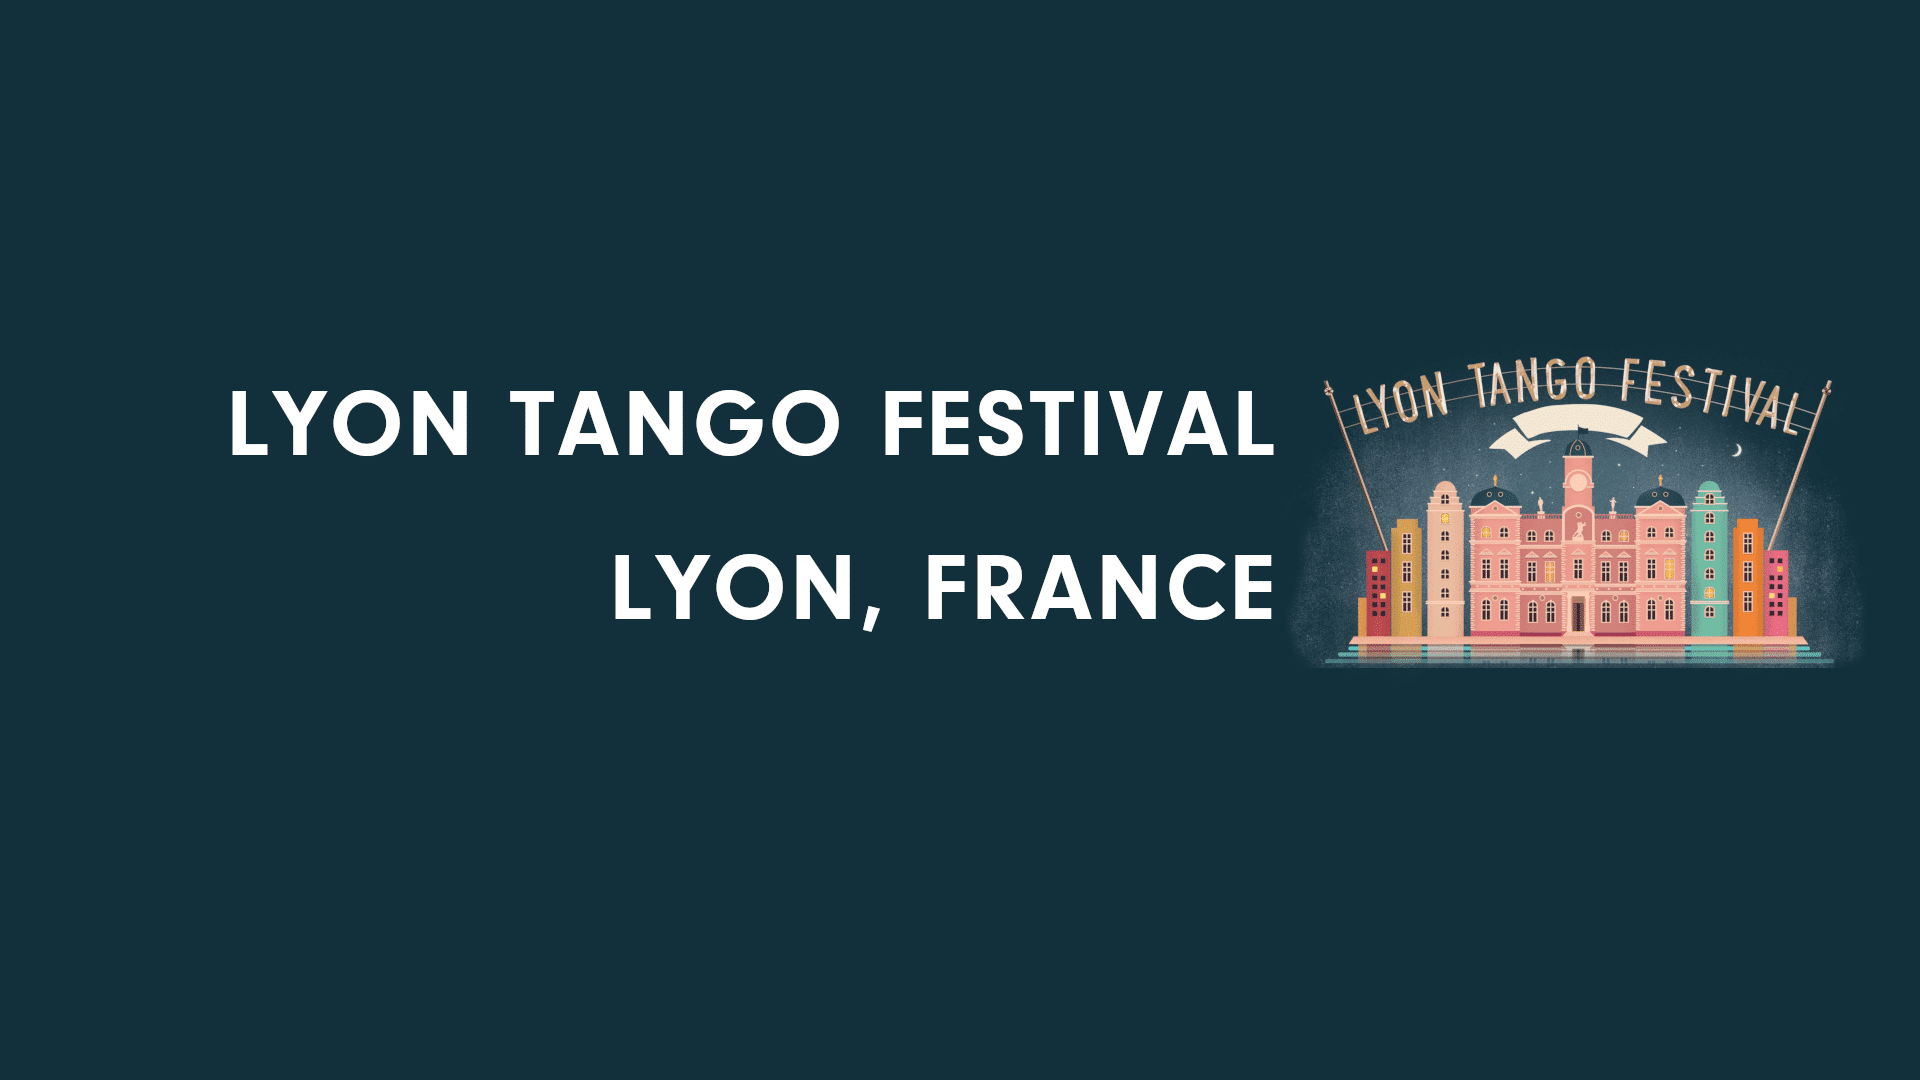 Lyon Tango Festival